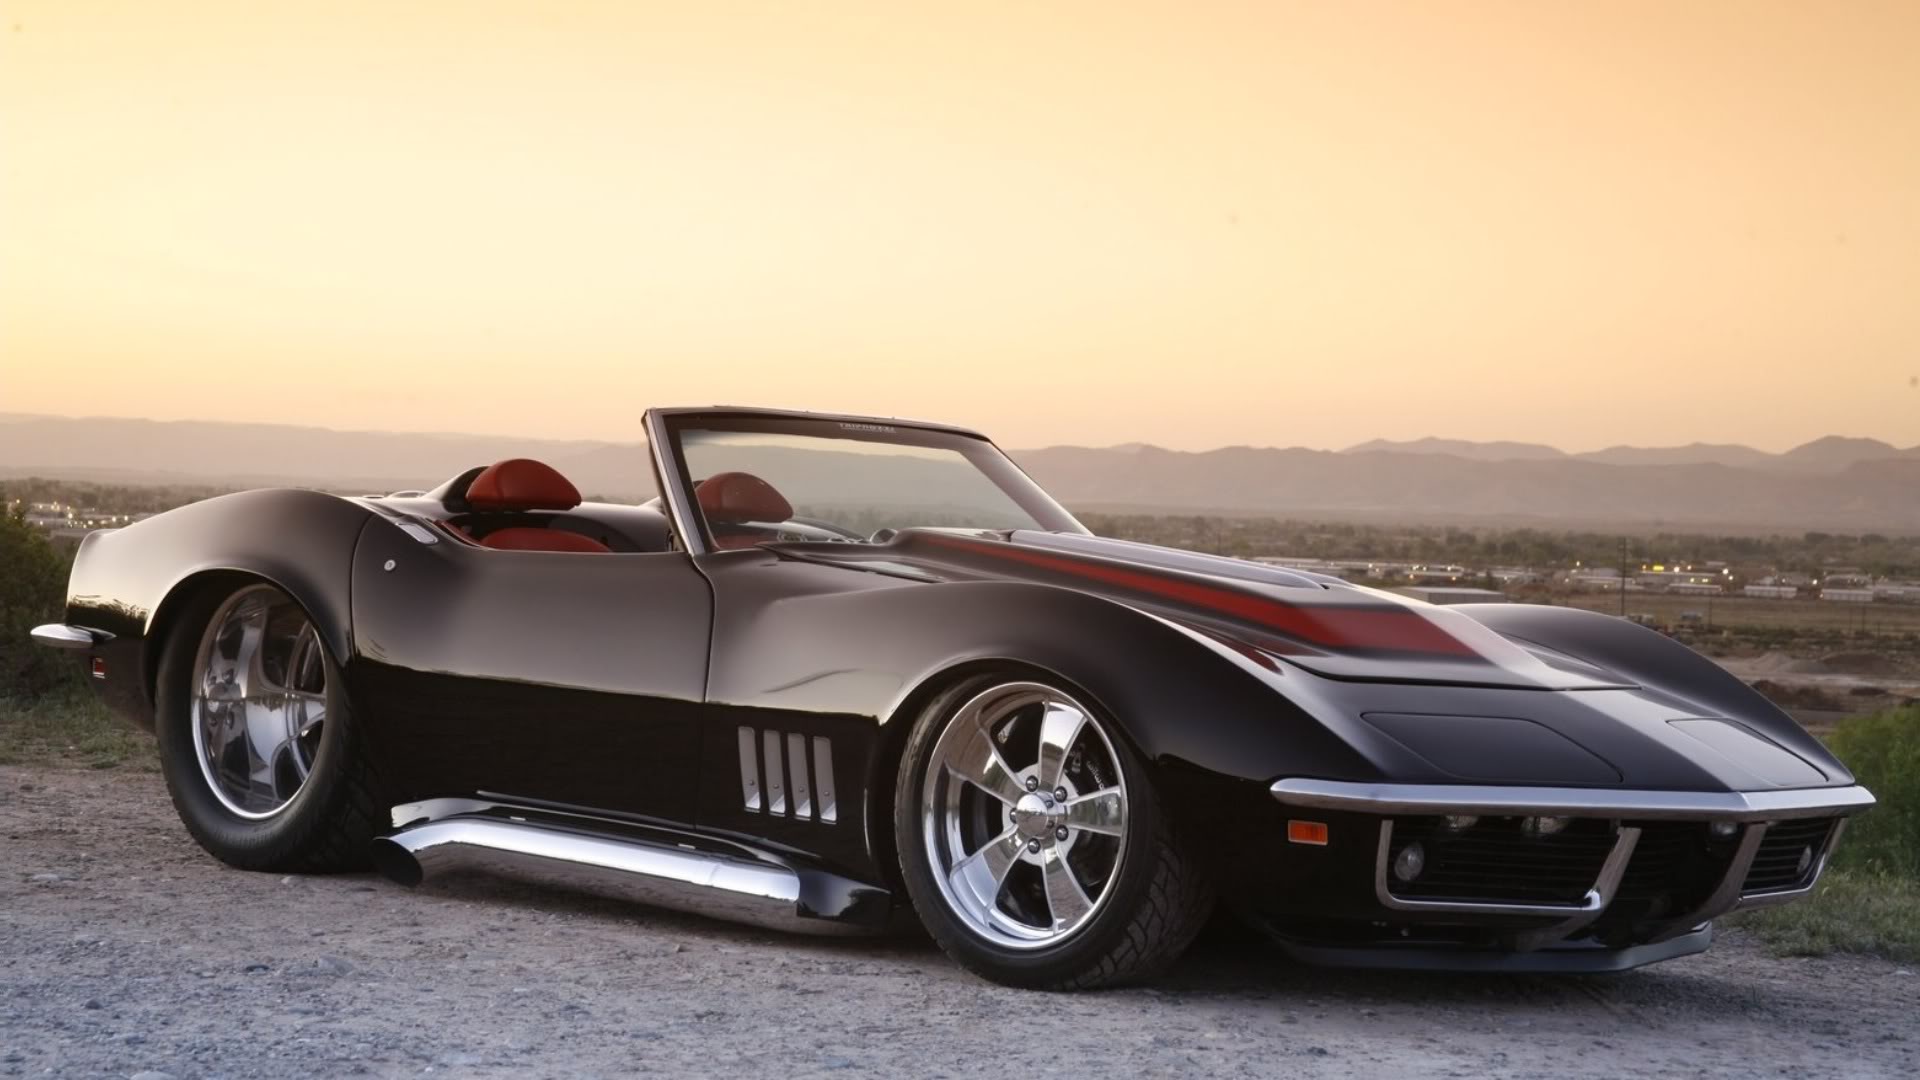 Corvette From The Black Chevrolet